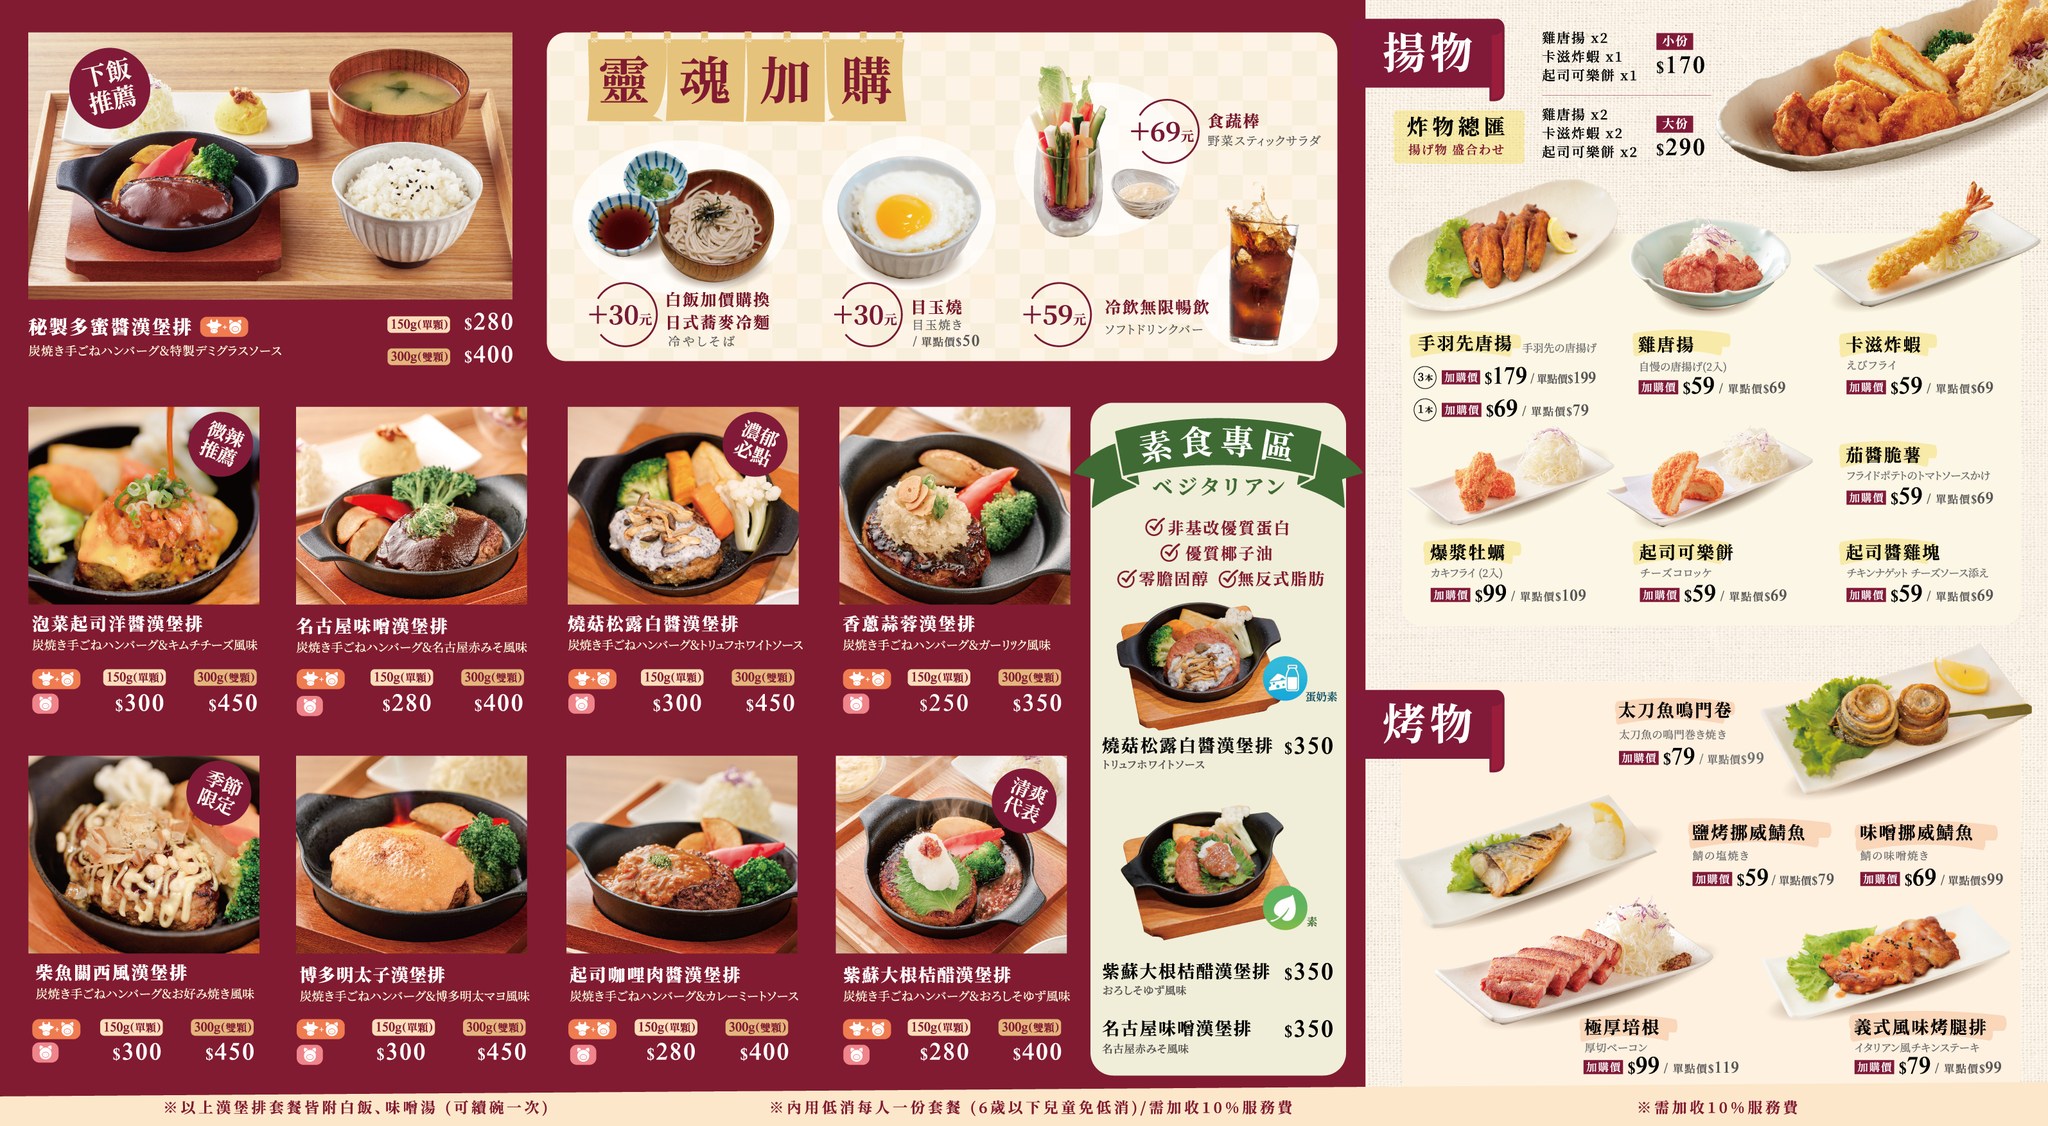 (松山區美食)米與多蜜日式炭火漢堡排，在台灣也可以吃到日本關西道地的國民美食日式漢堡排，超過10種口味的漢堡排任君挑選~(內含菜單)鄰近南京三民站 @Nancy將的生活筆計本